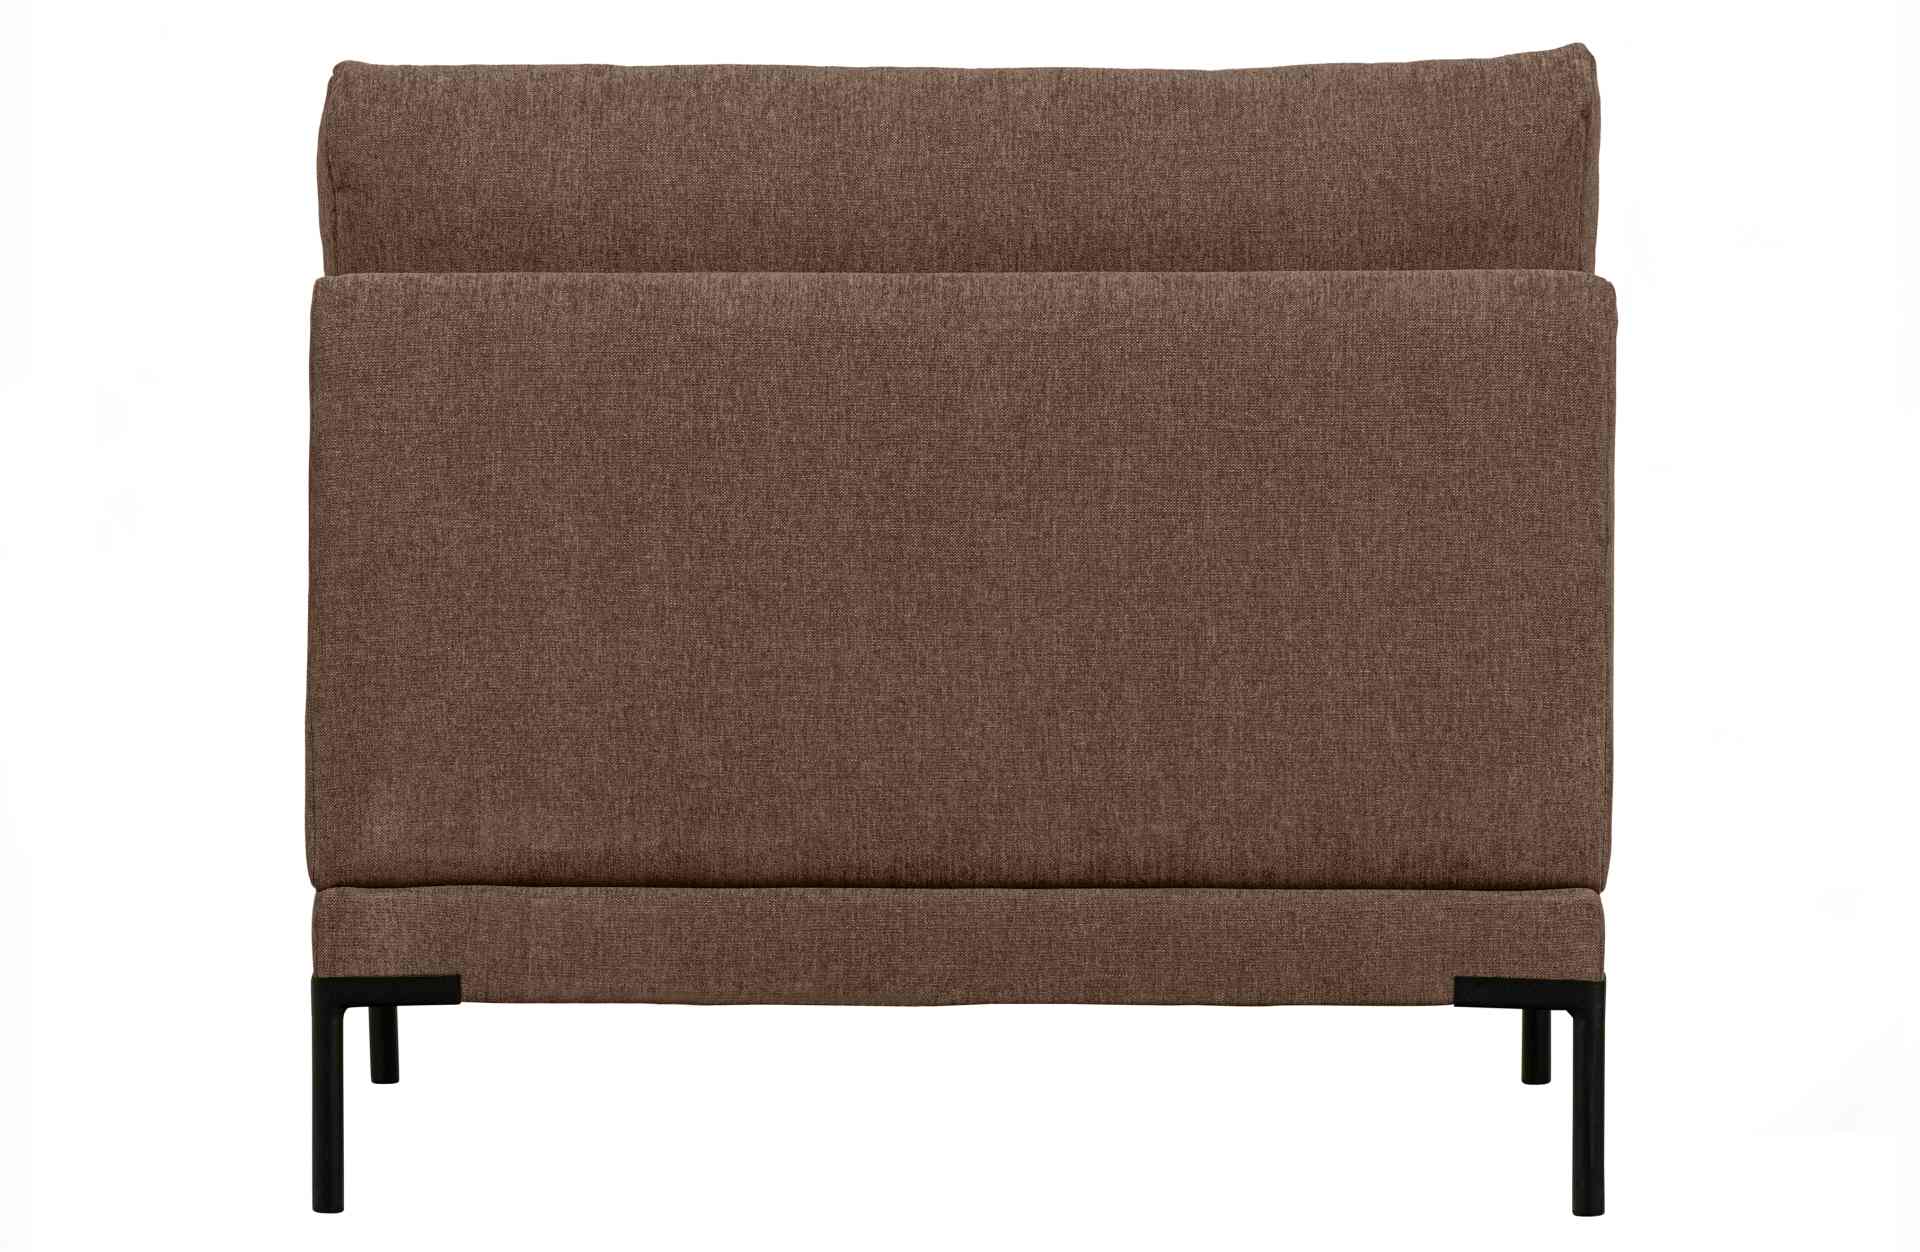 Das Modulsofa Couple Lounge überzeugt mit seinem modernen Design. Das Loveseat Element wurde aus Melange Stoff gefertigt, welcher einen einen braunen Farbton besitzen. Das Gestell ist aus Metall und hat eine schwarze Farbe. Das Element hat eine Länge von 